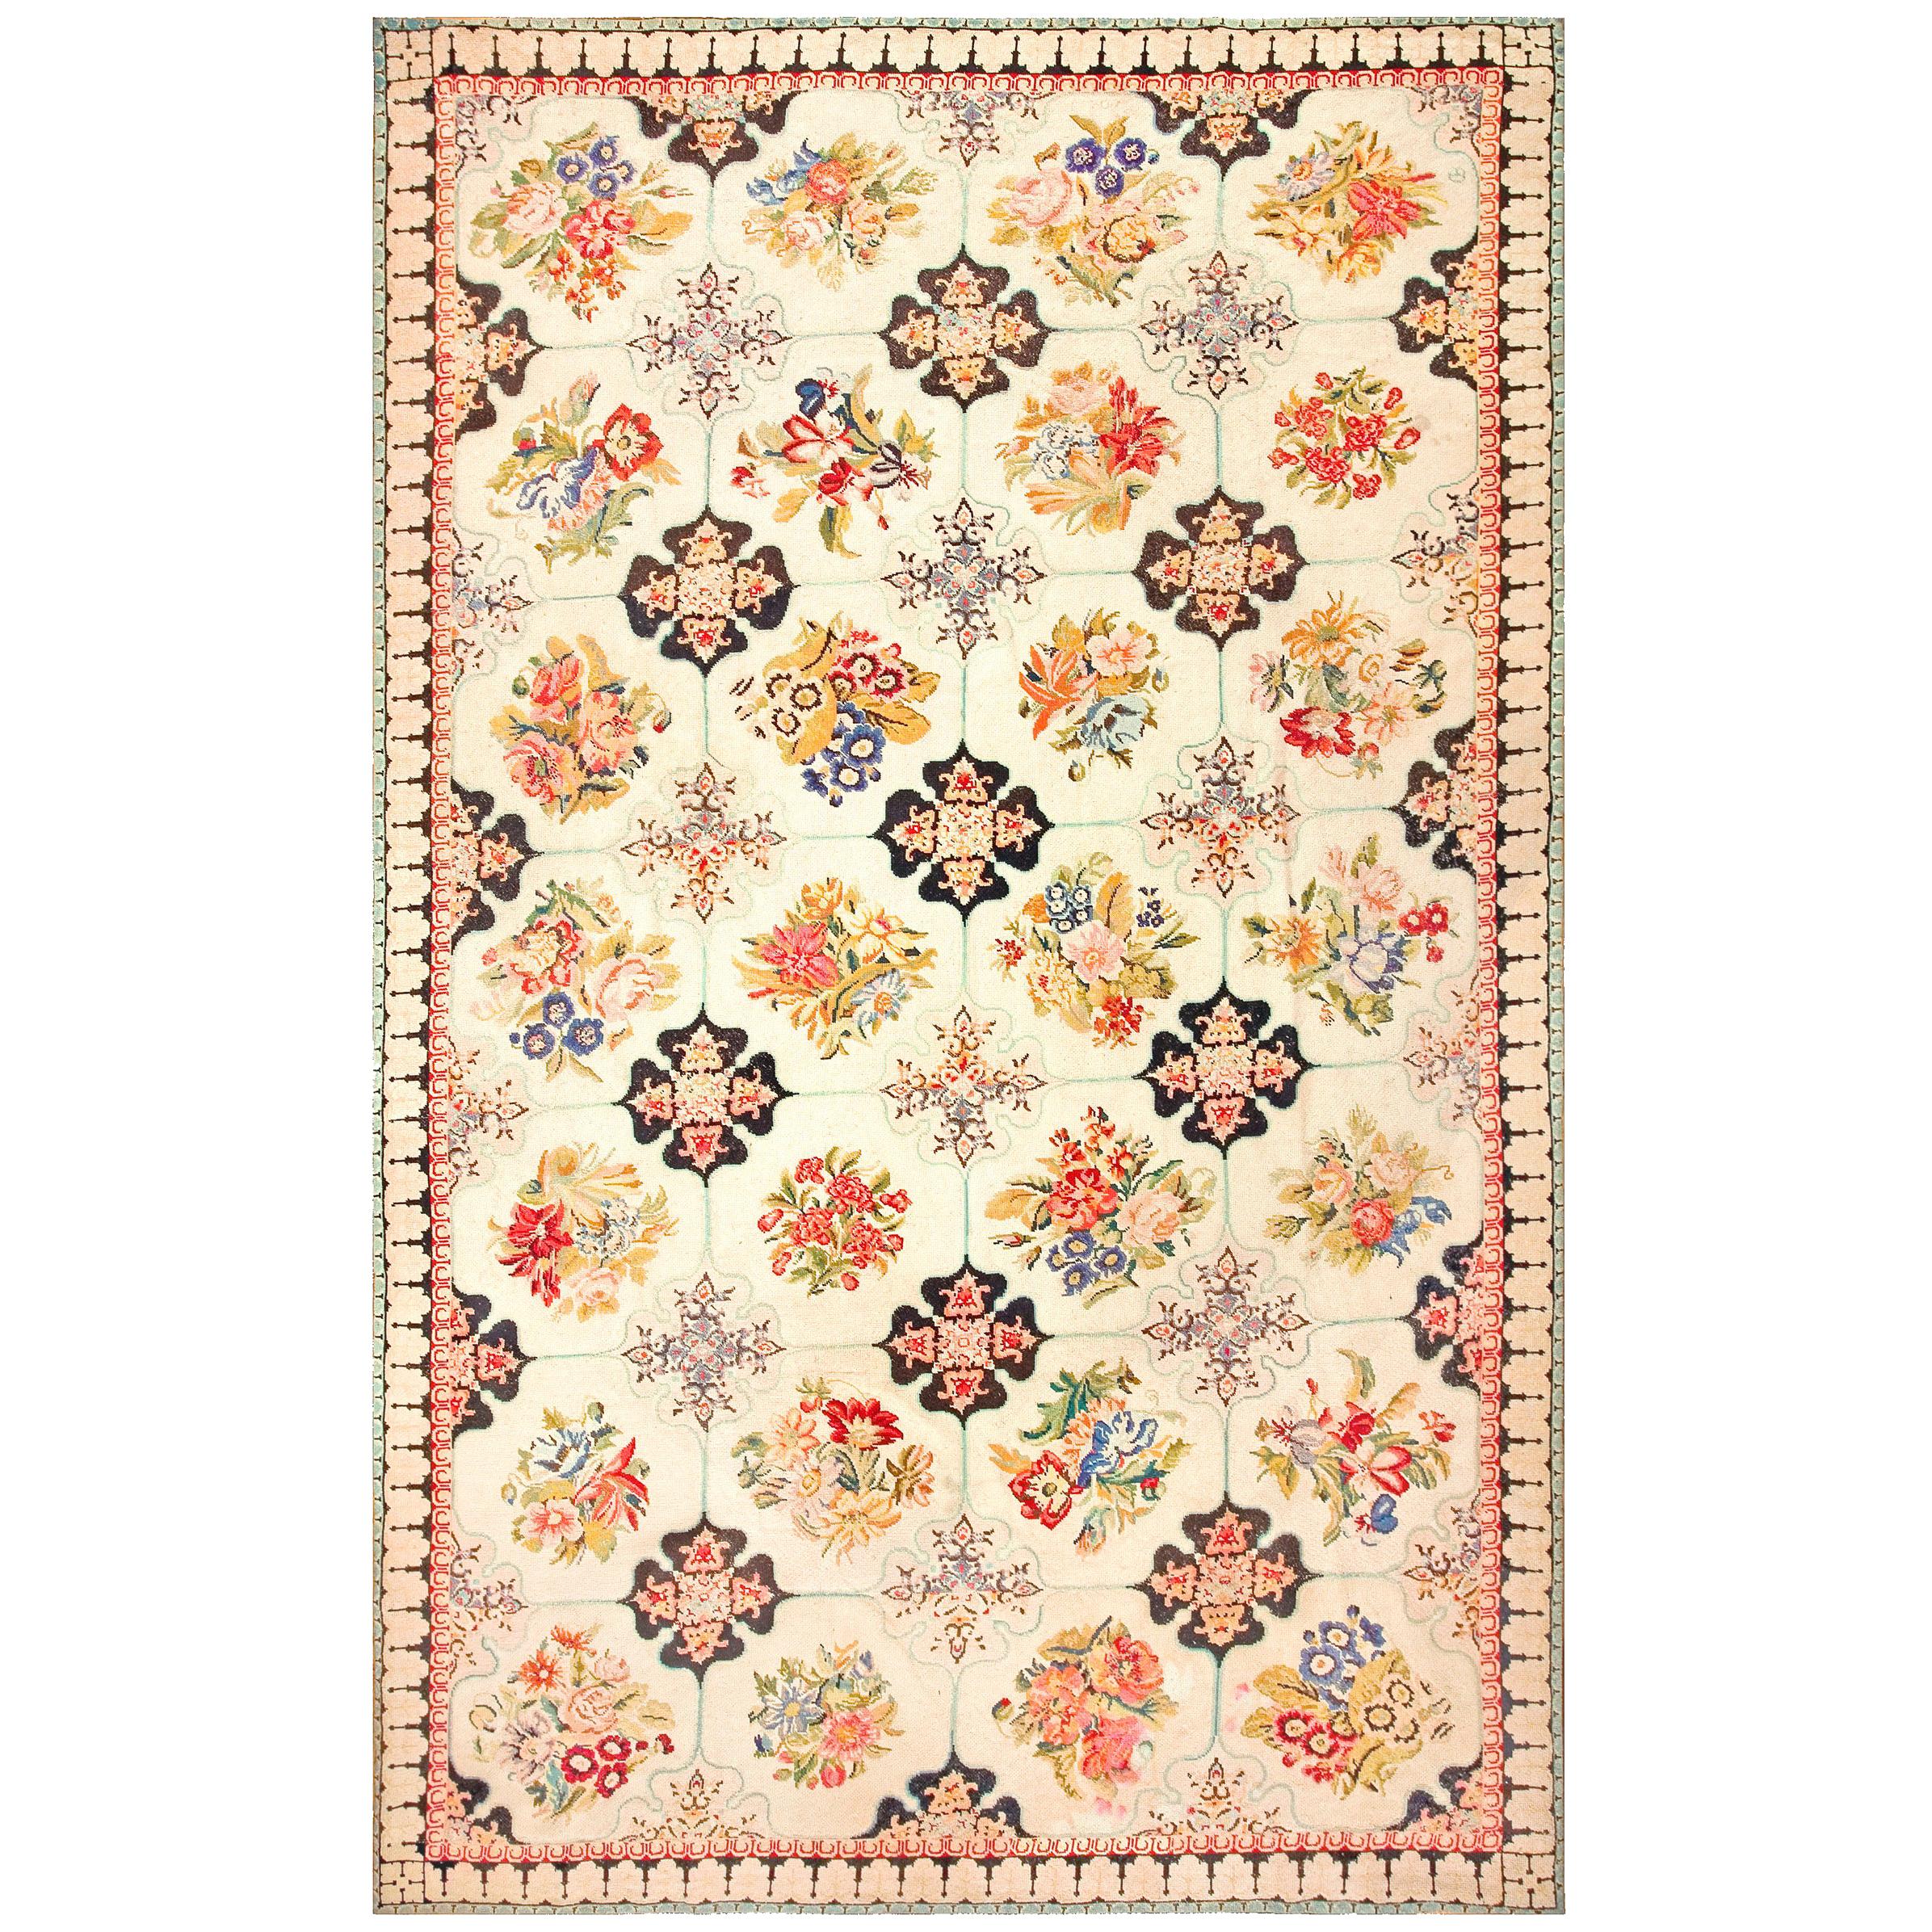 Englischer Nadelspitze-Teppich des 19. Jahrhunderts (9' x 14'8" - 274 x 447)